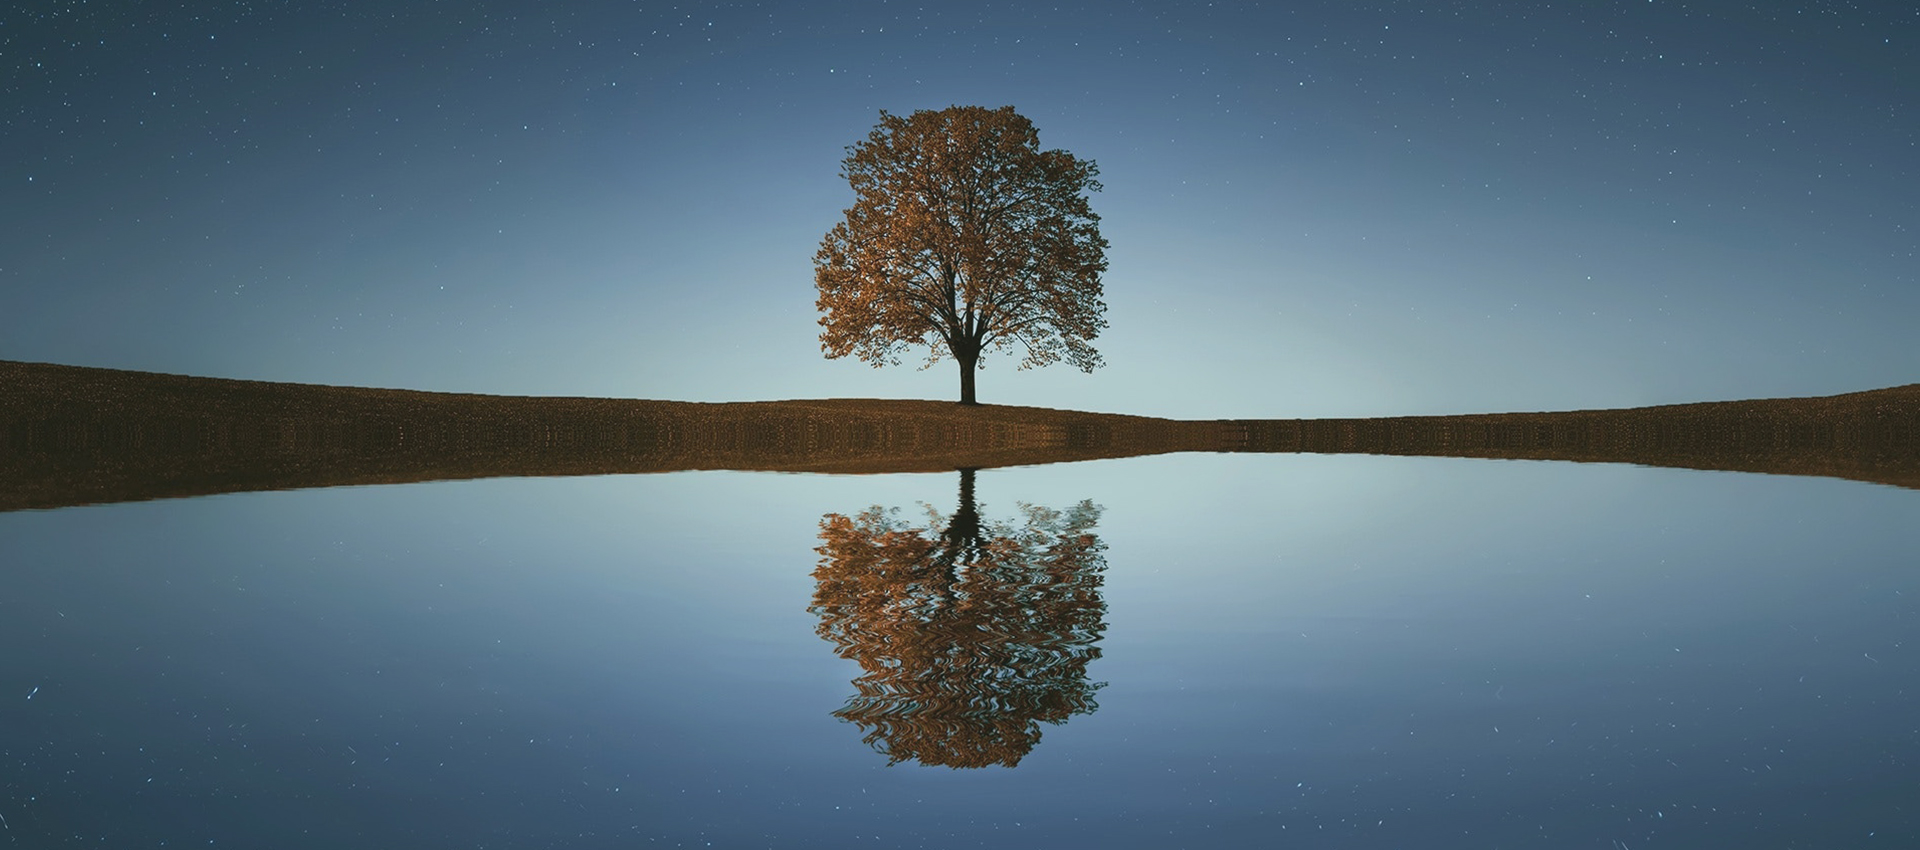 Homepage Studio Gianfranco Podda - Immagine albero che si specchia sull'acqua